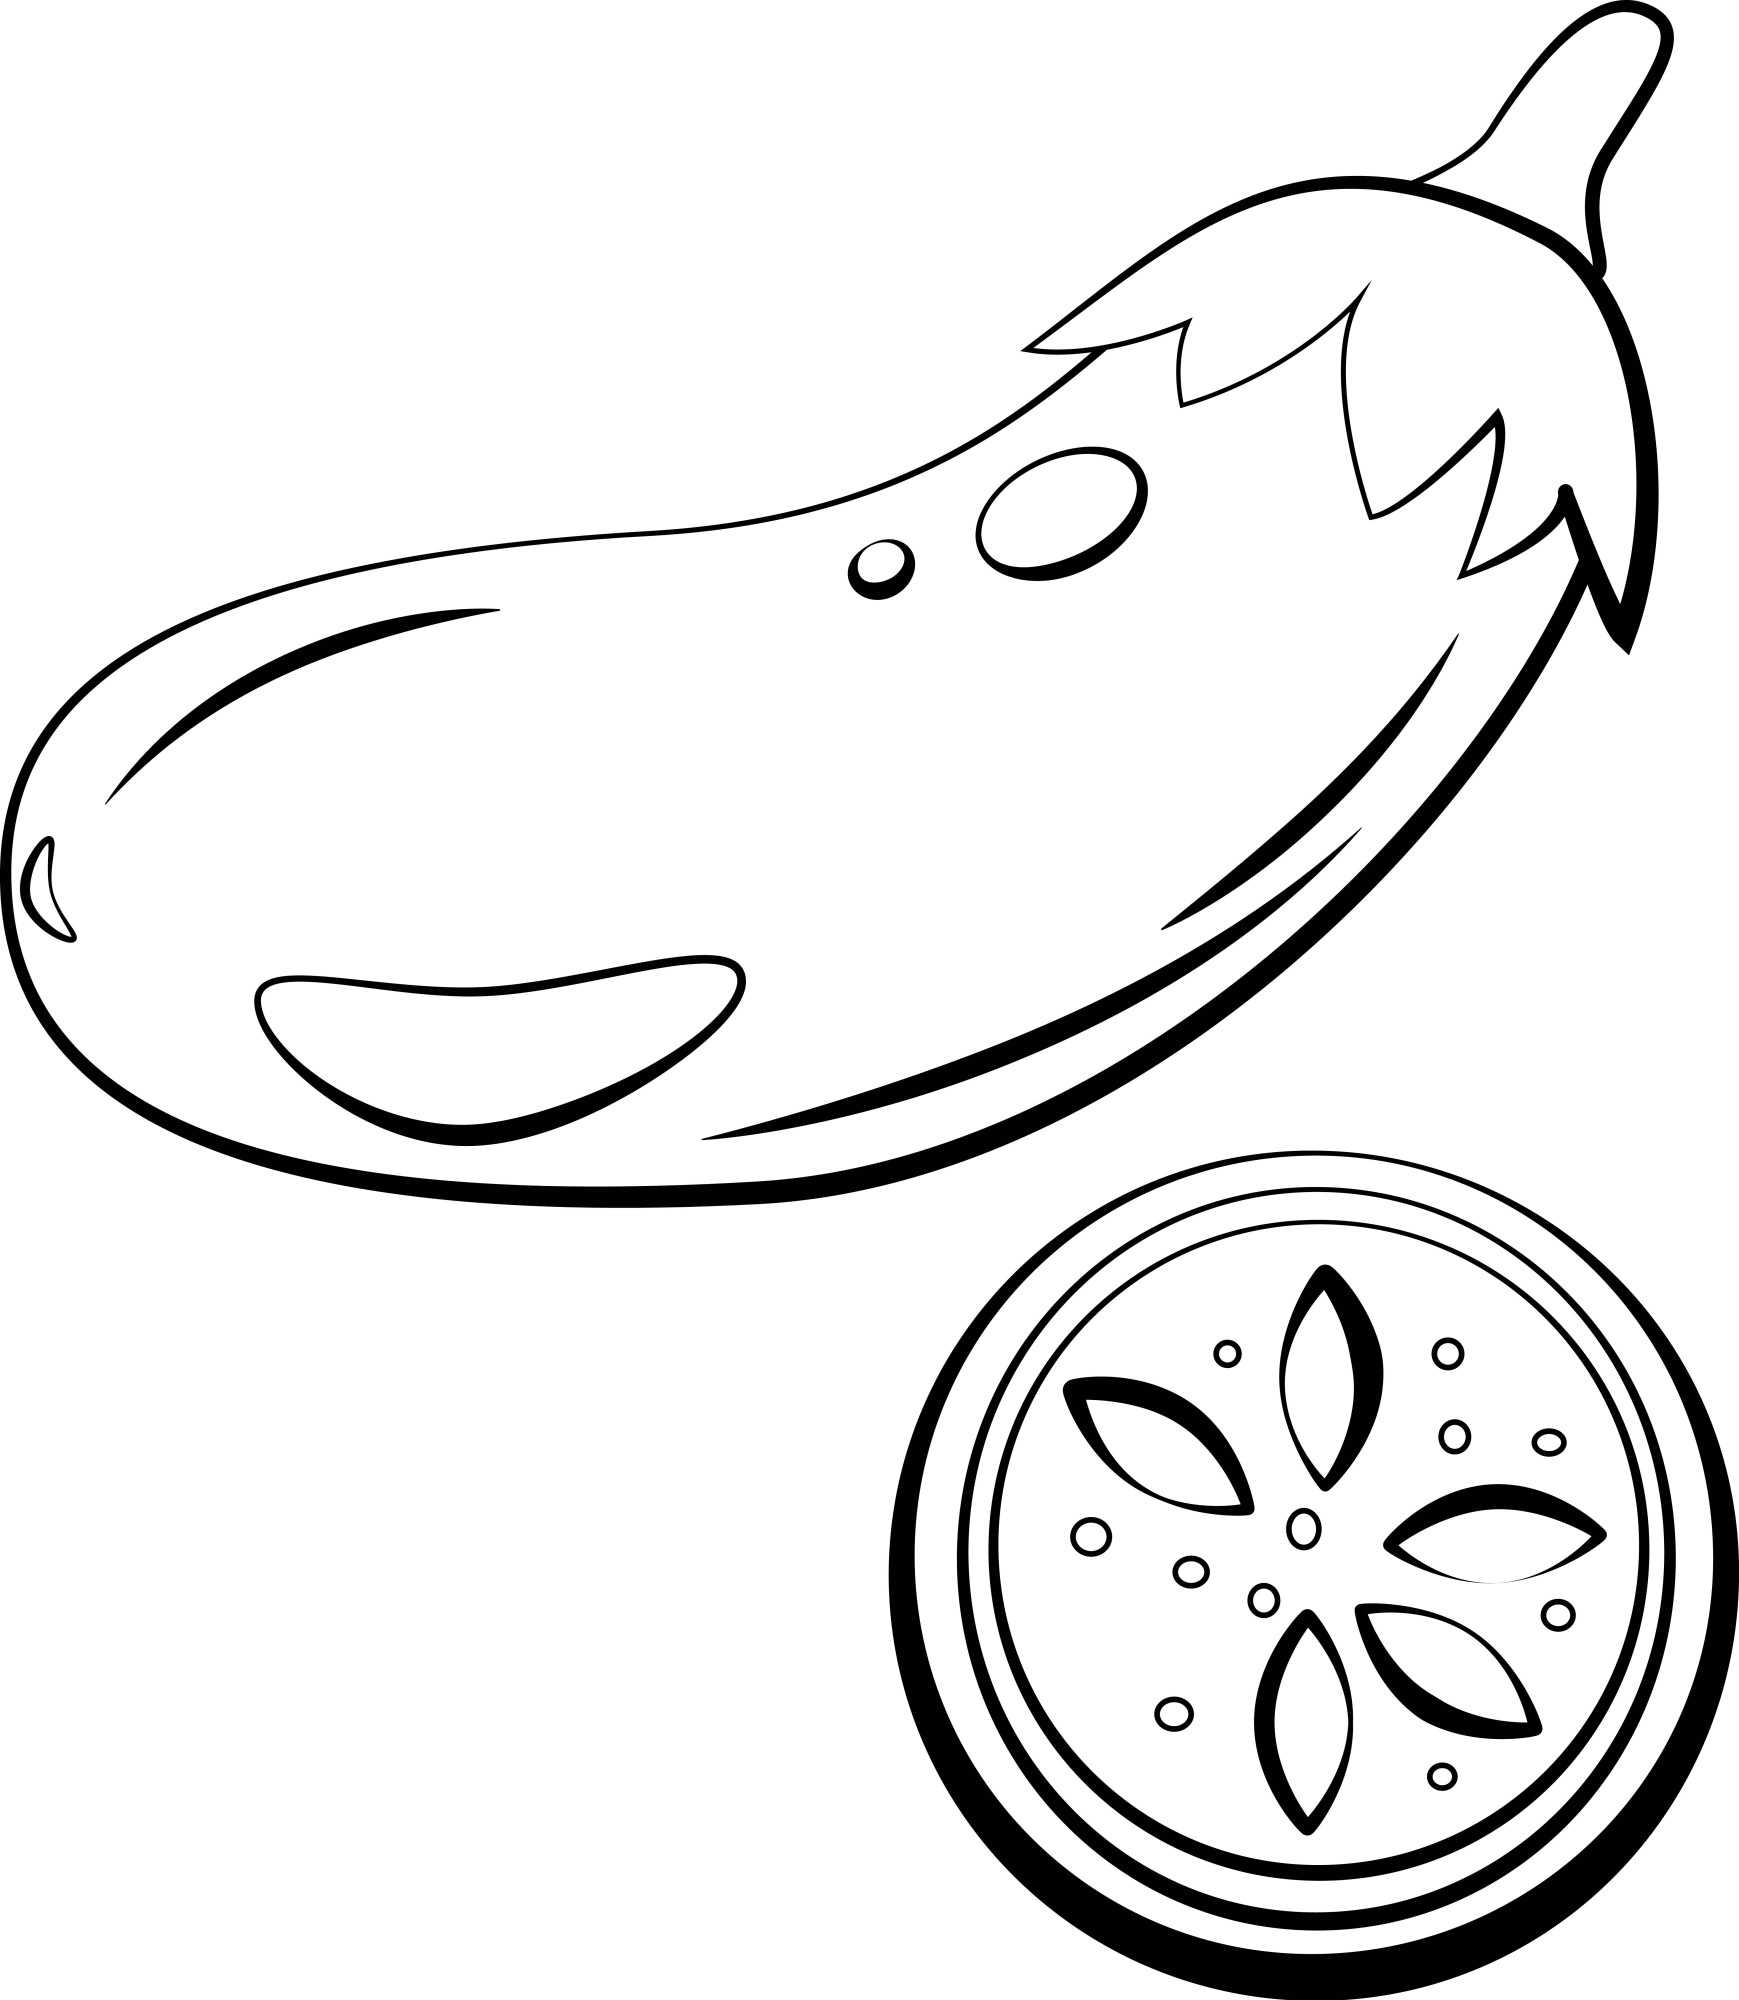 Раскраска для детей: вкусный баклажан с долькой